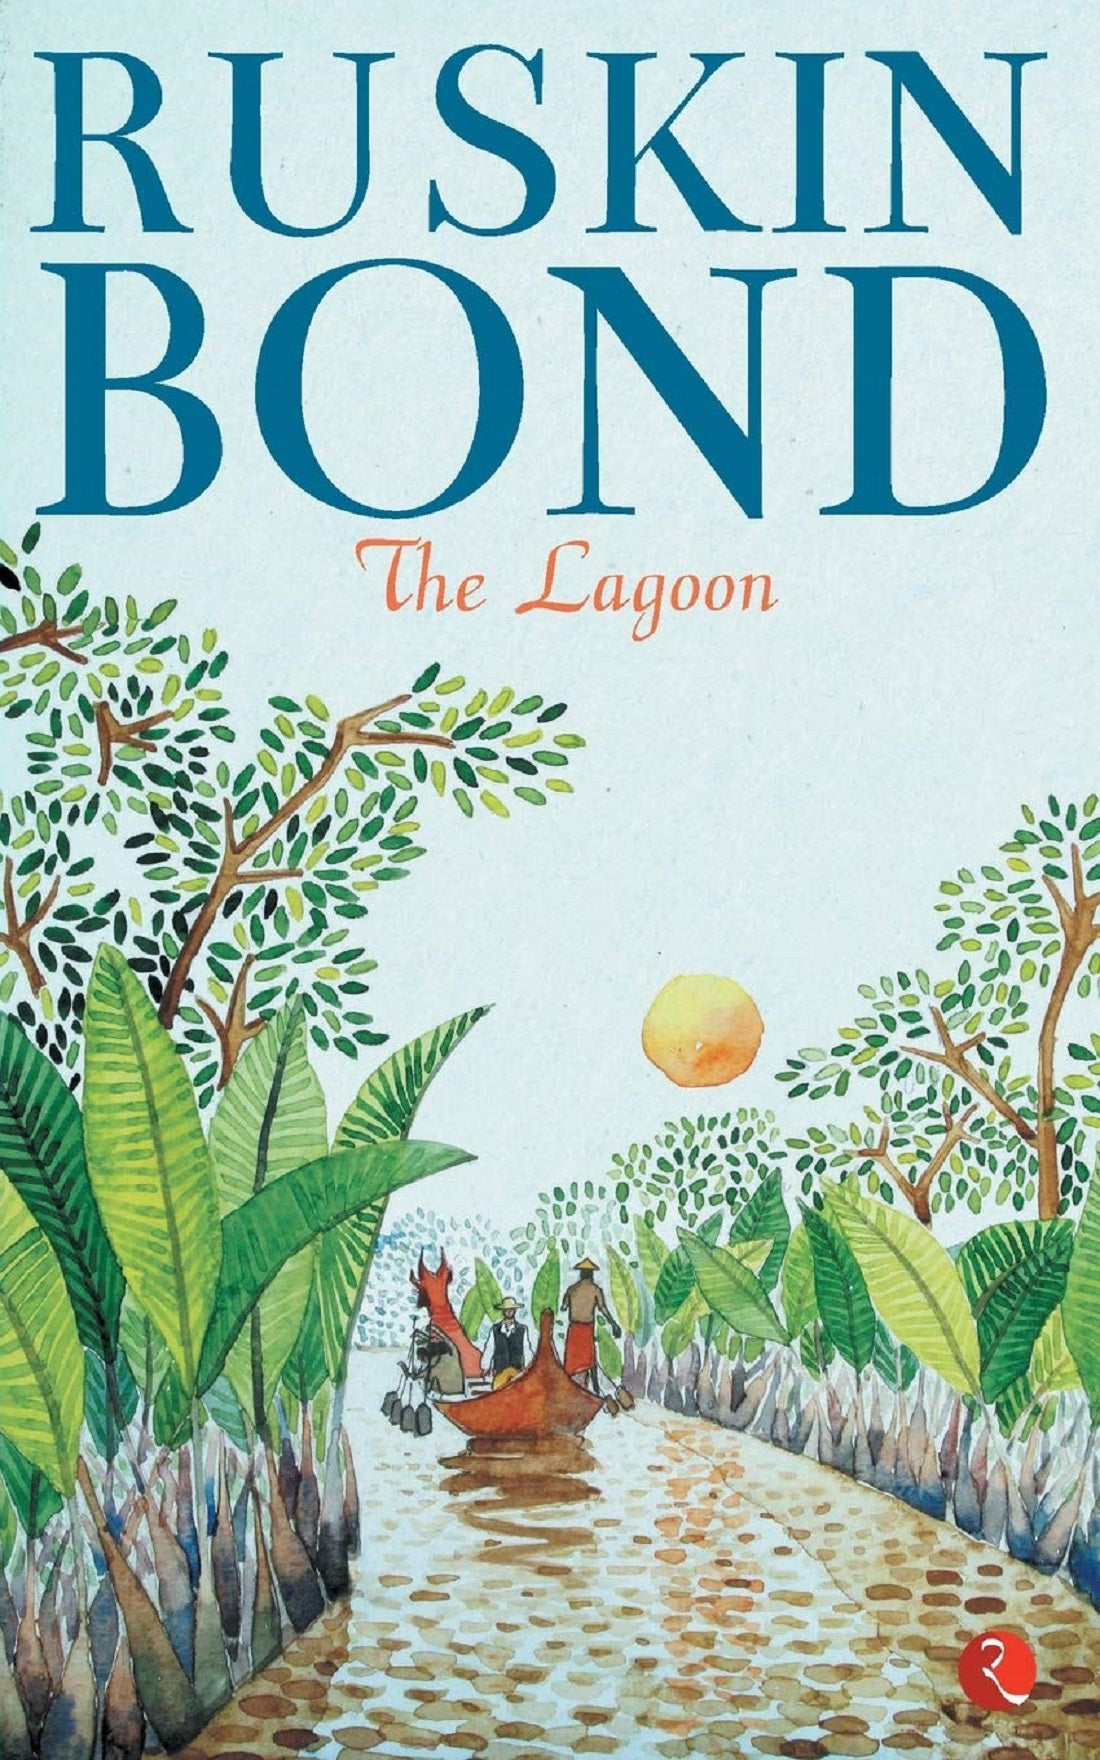 THE LAGOON